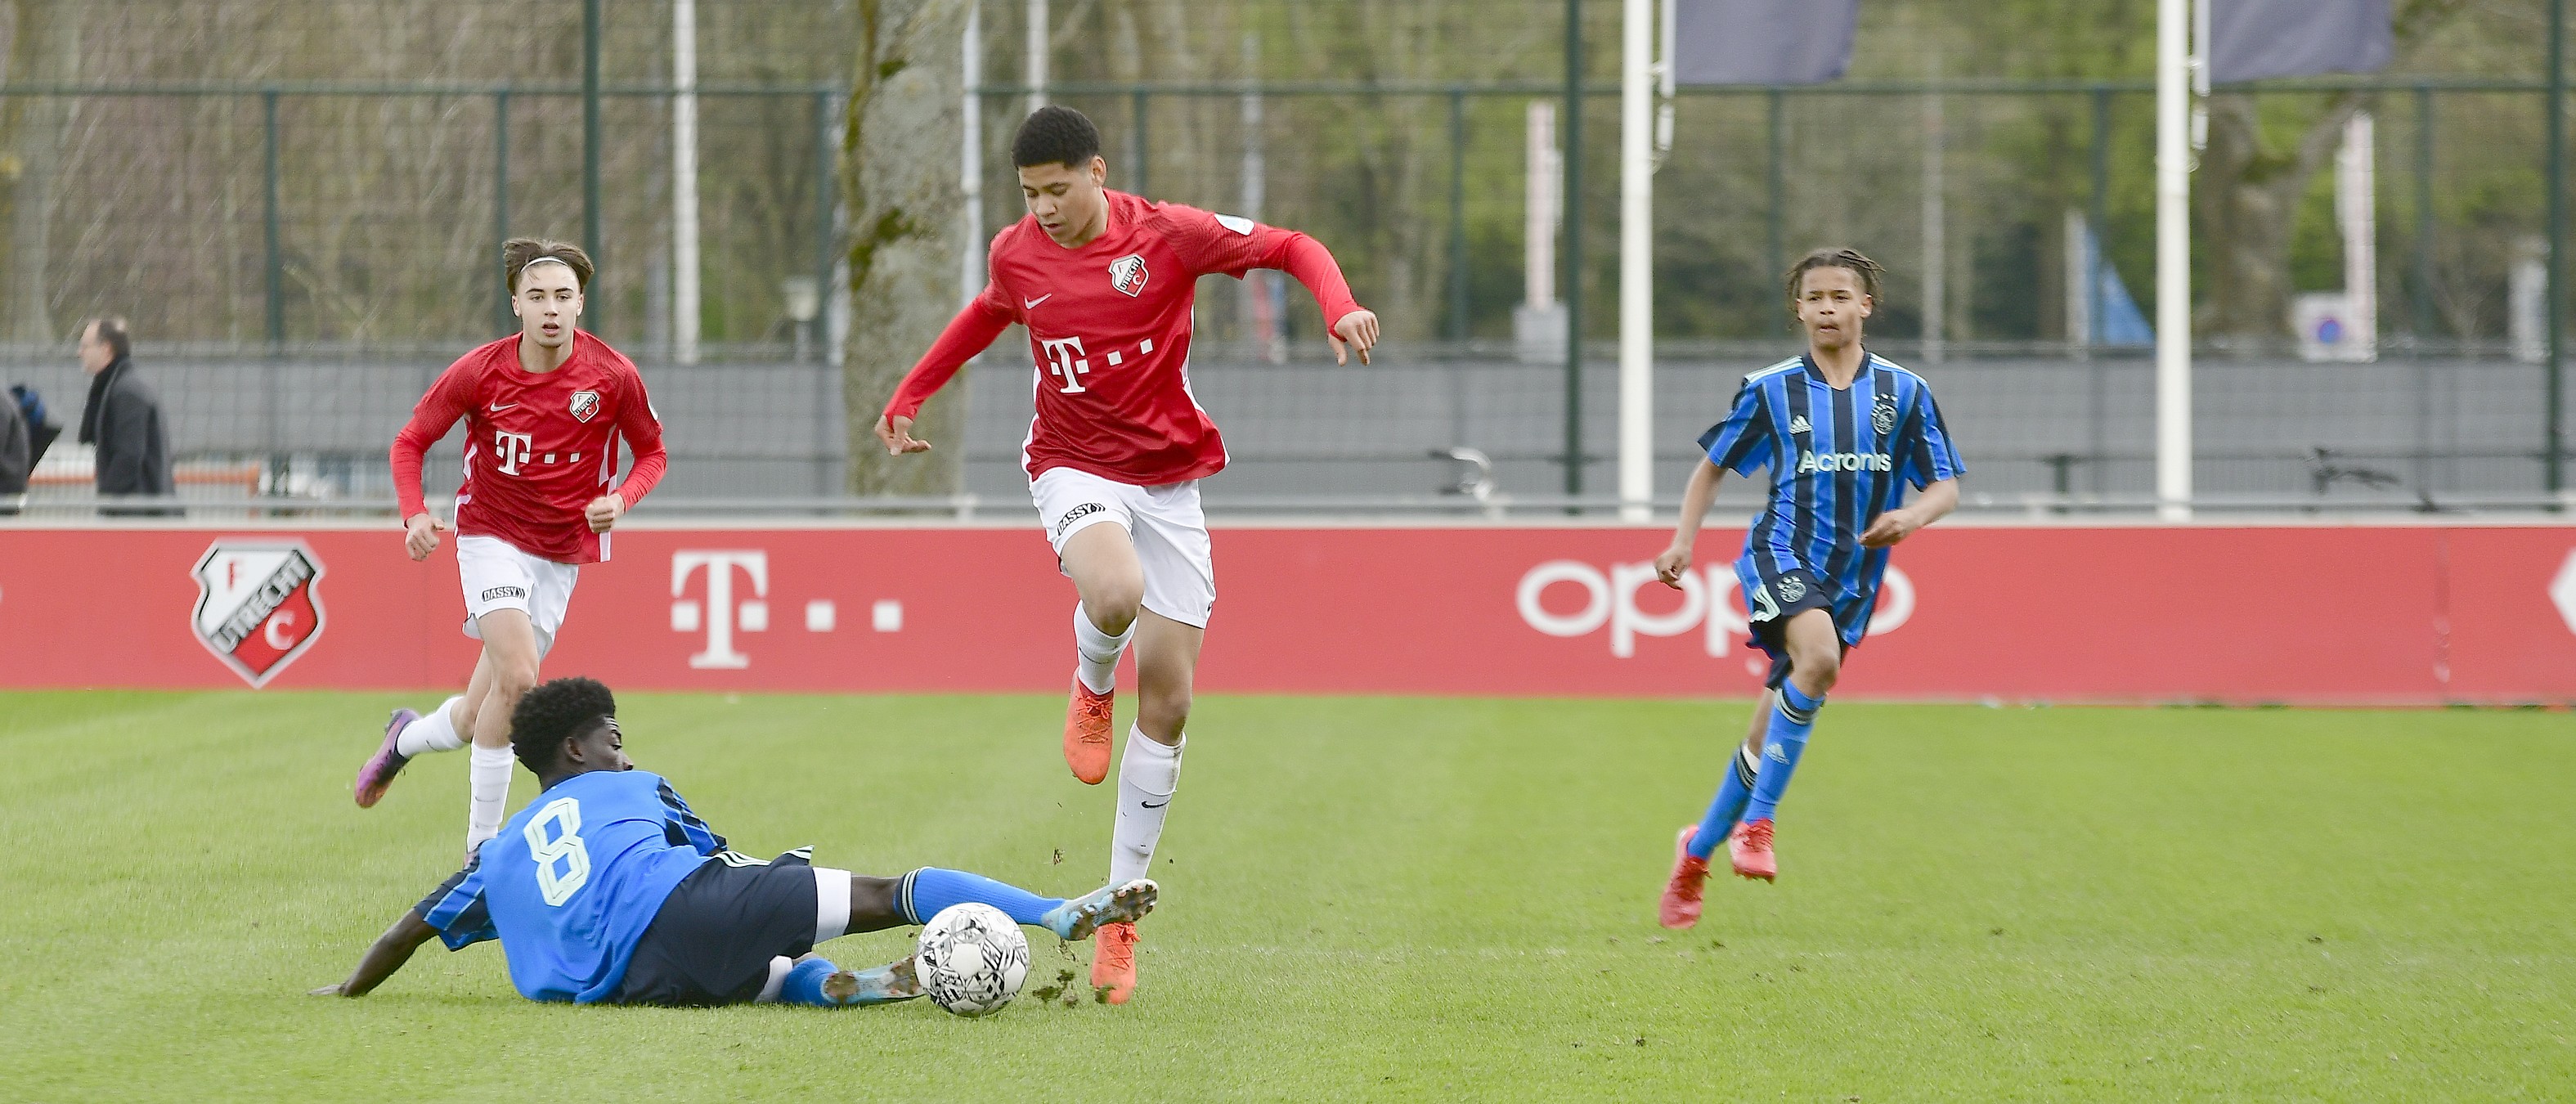 Wedstrijd van de Week: FC Utrecht O17 komt tekort tegen sterke tegenstander